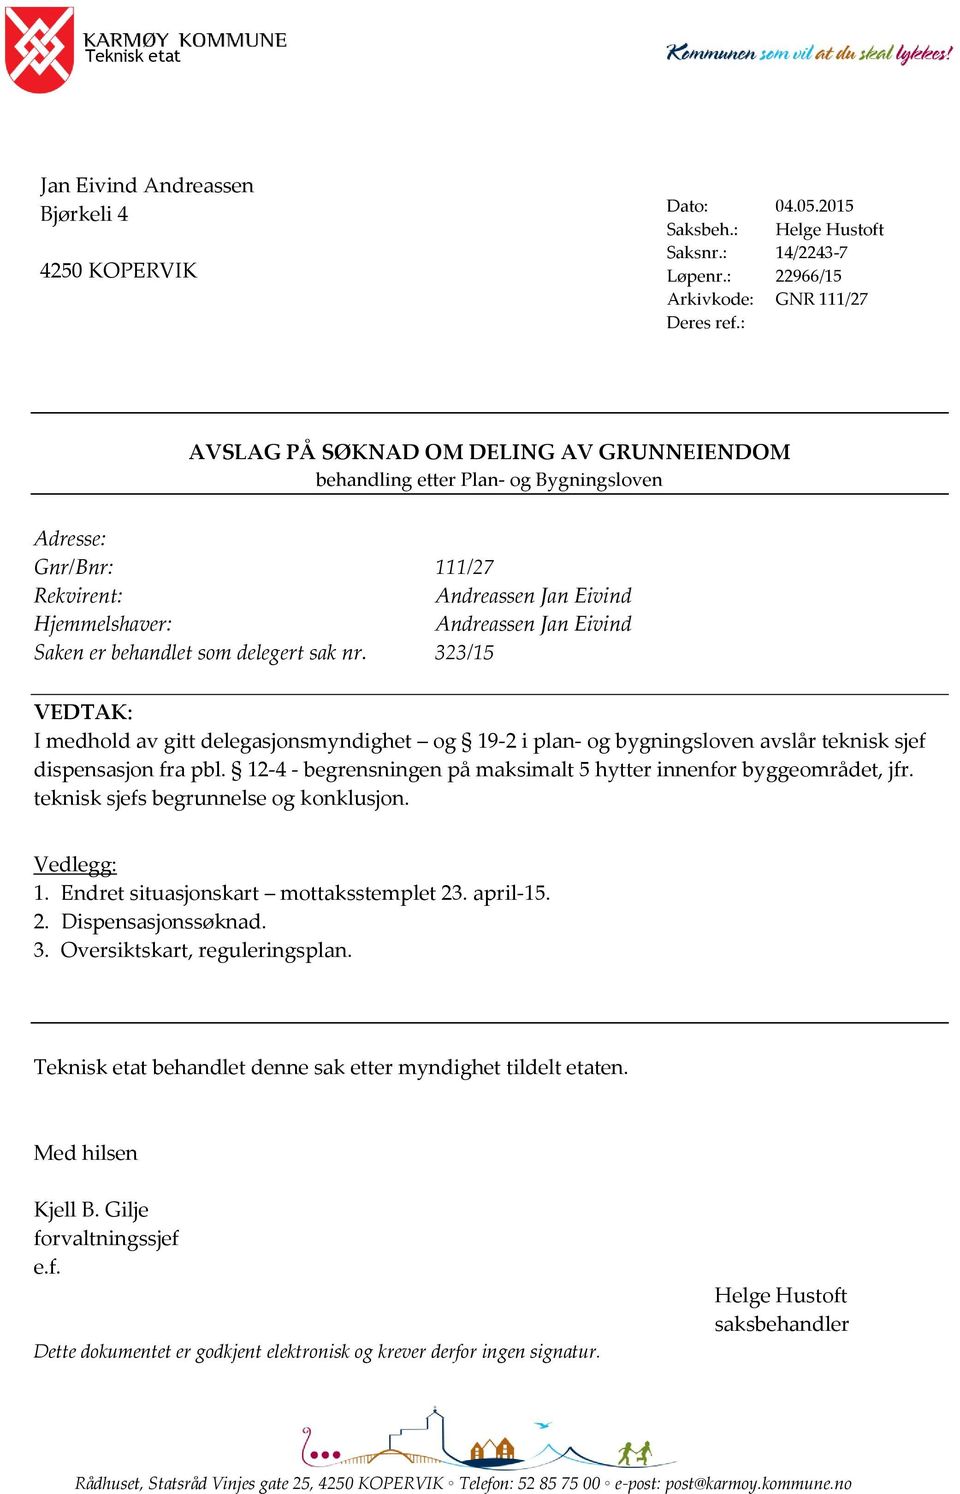 Hjemmelshaver: Andreassen Jan Eivind Saken er behandlet som delegert sak nr.